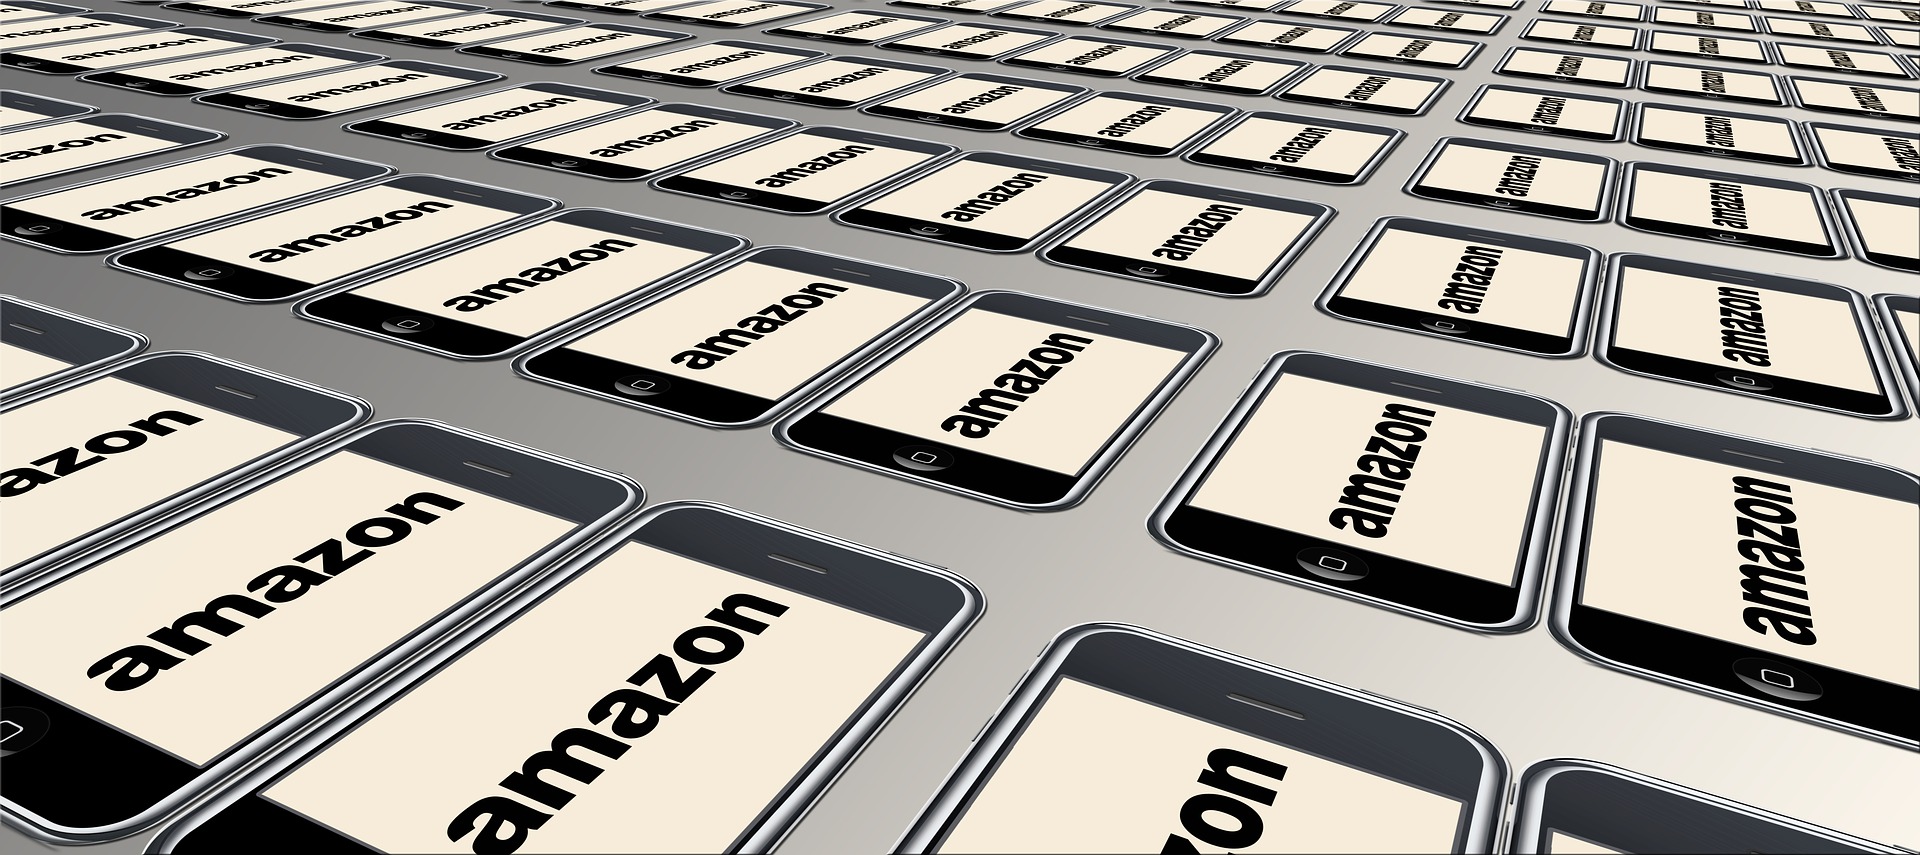 Accordo Amazon, cambierà il rapporto con le multinazionali